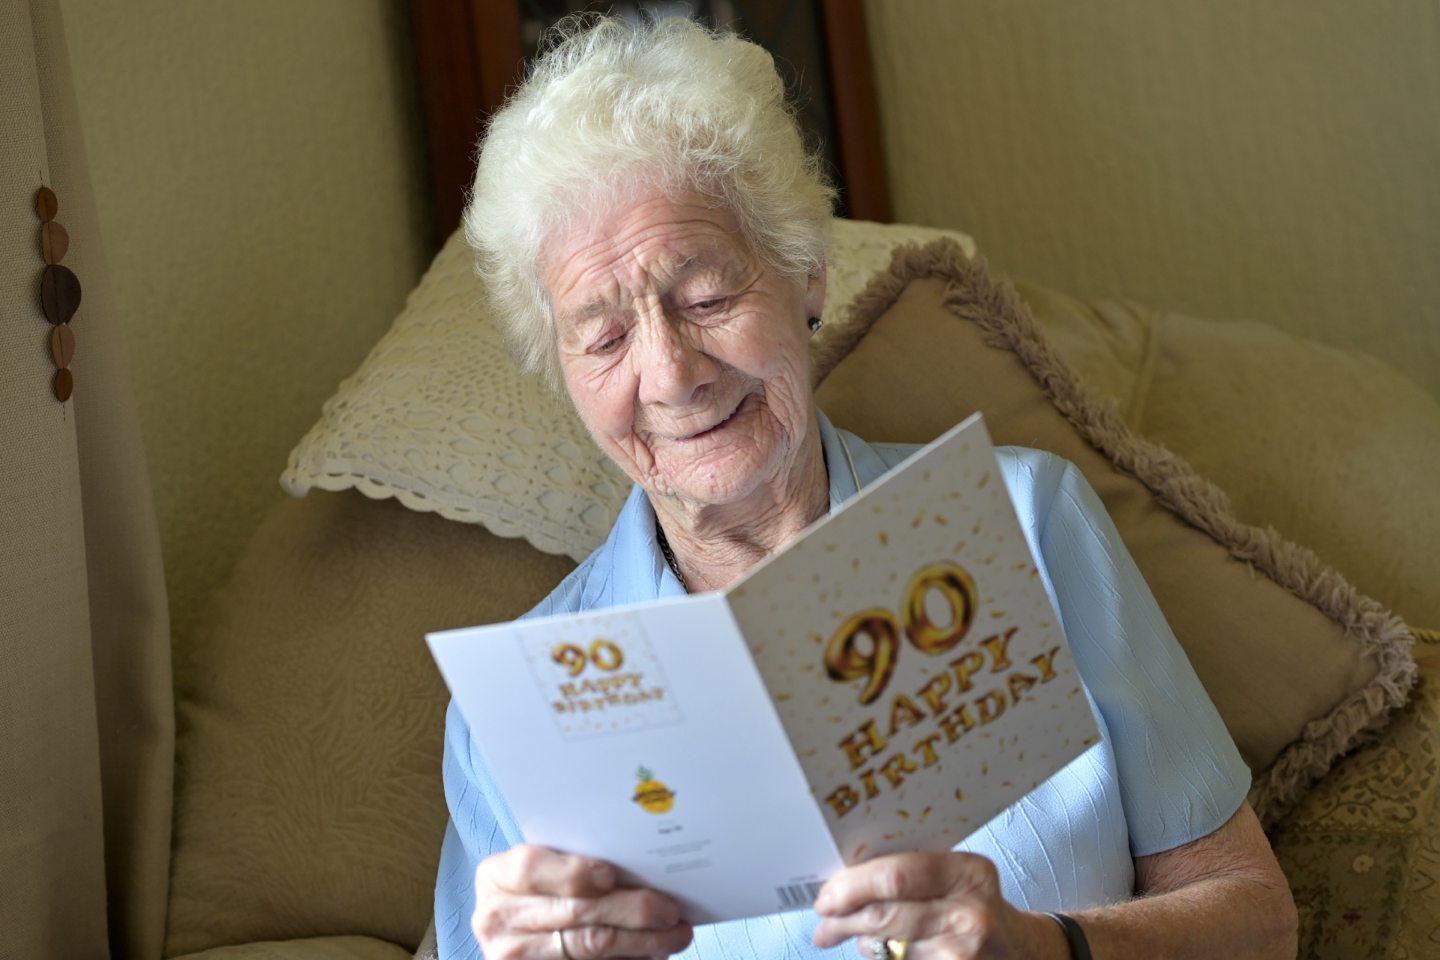 Elma O'Rourke, highland dementia sufferer, holding a 90th birthday card